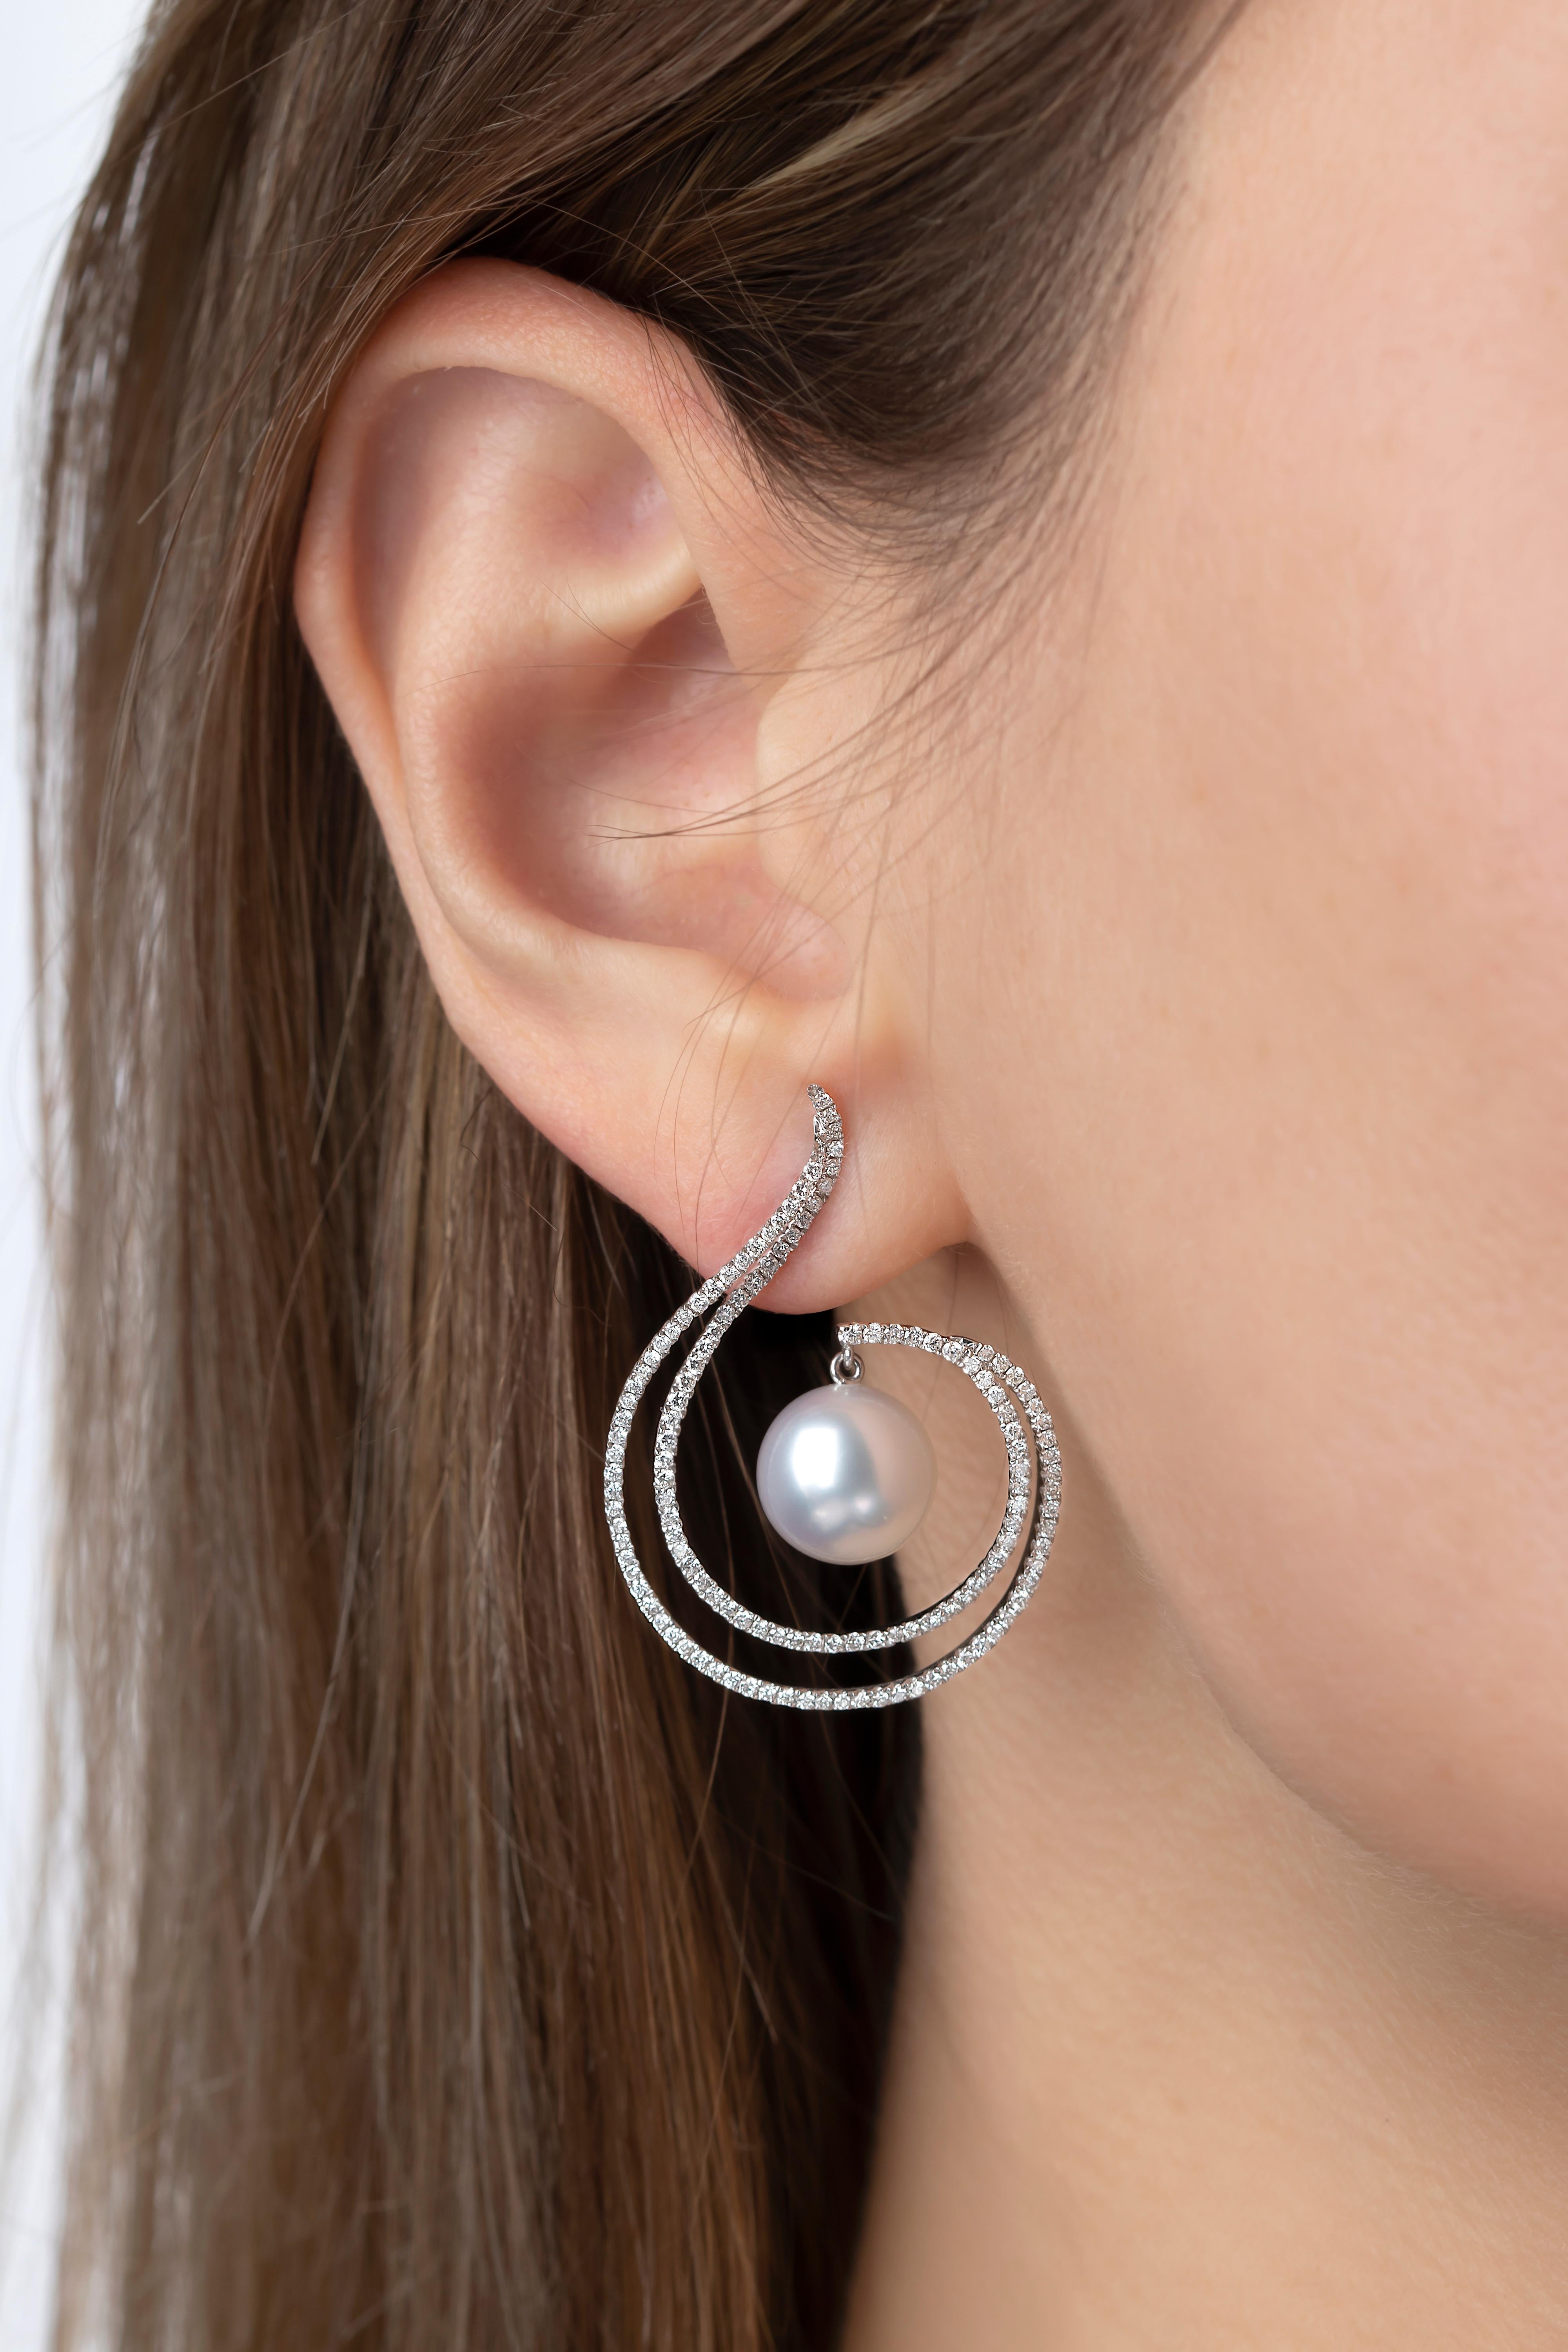 Diese aufsehenerregenden Ohrringe von Yoko London zeigen eine schimmernde Südseeperle inmitten eines modernen Wirbels aus Diamanten. Die Ohrringe sind in 18 Karat Weißgold gefasst, um das Funkeln und den Glanz dieser gelungenen Kombination aus